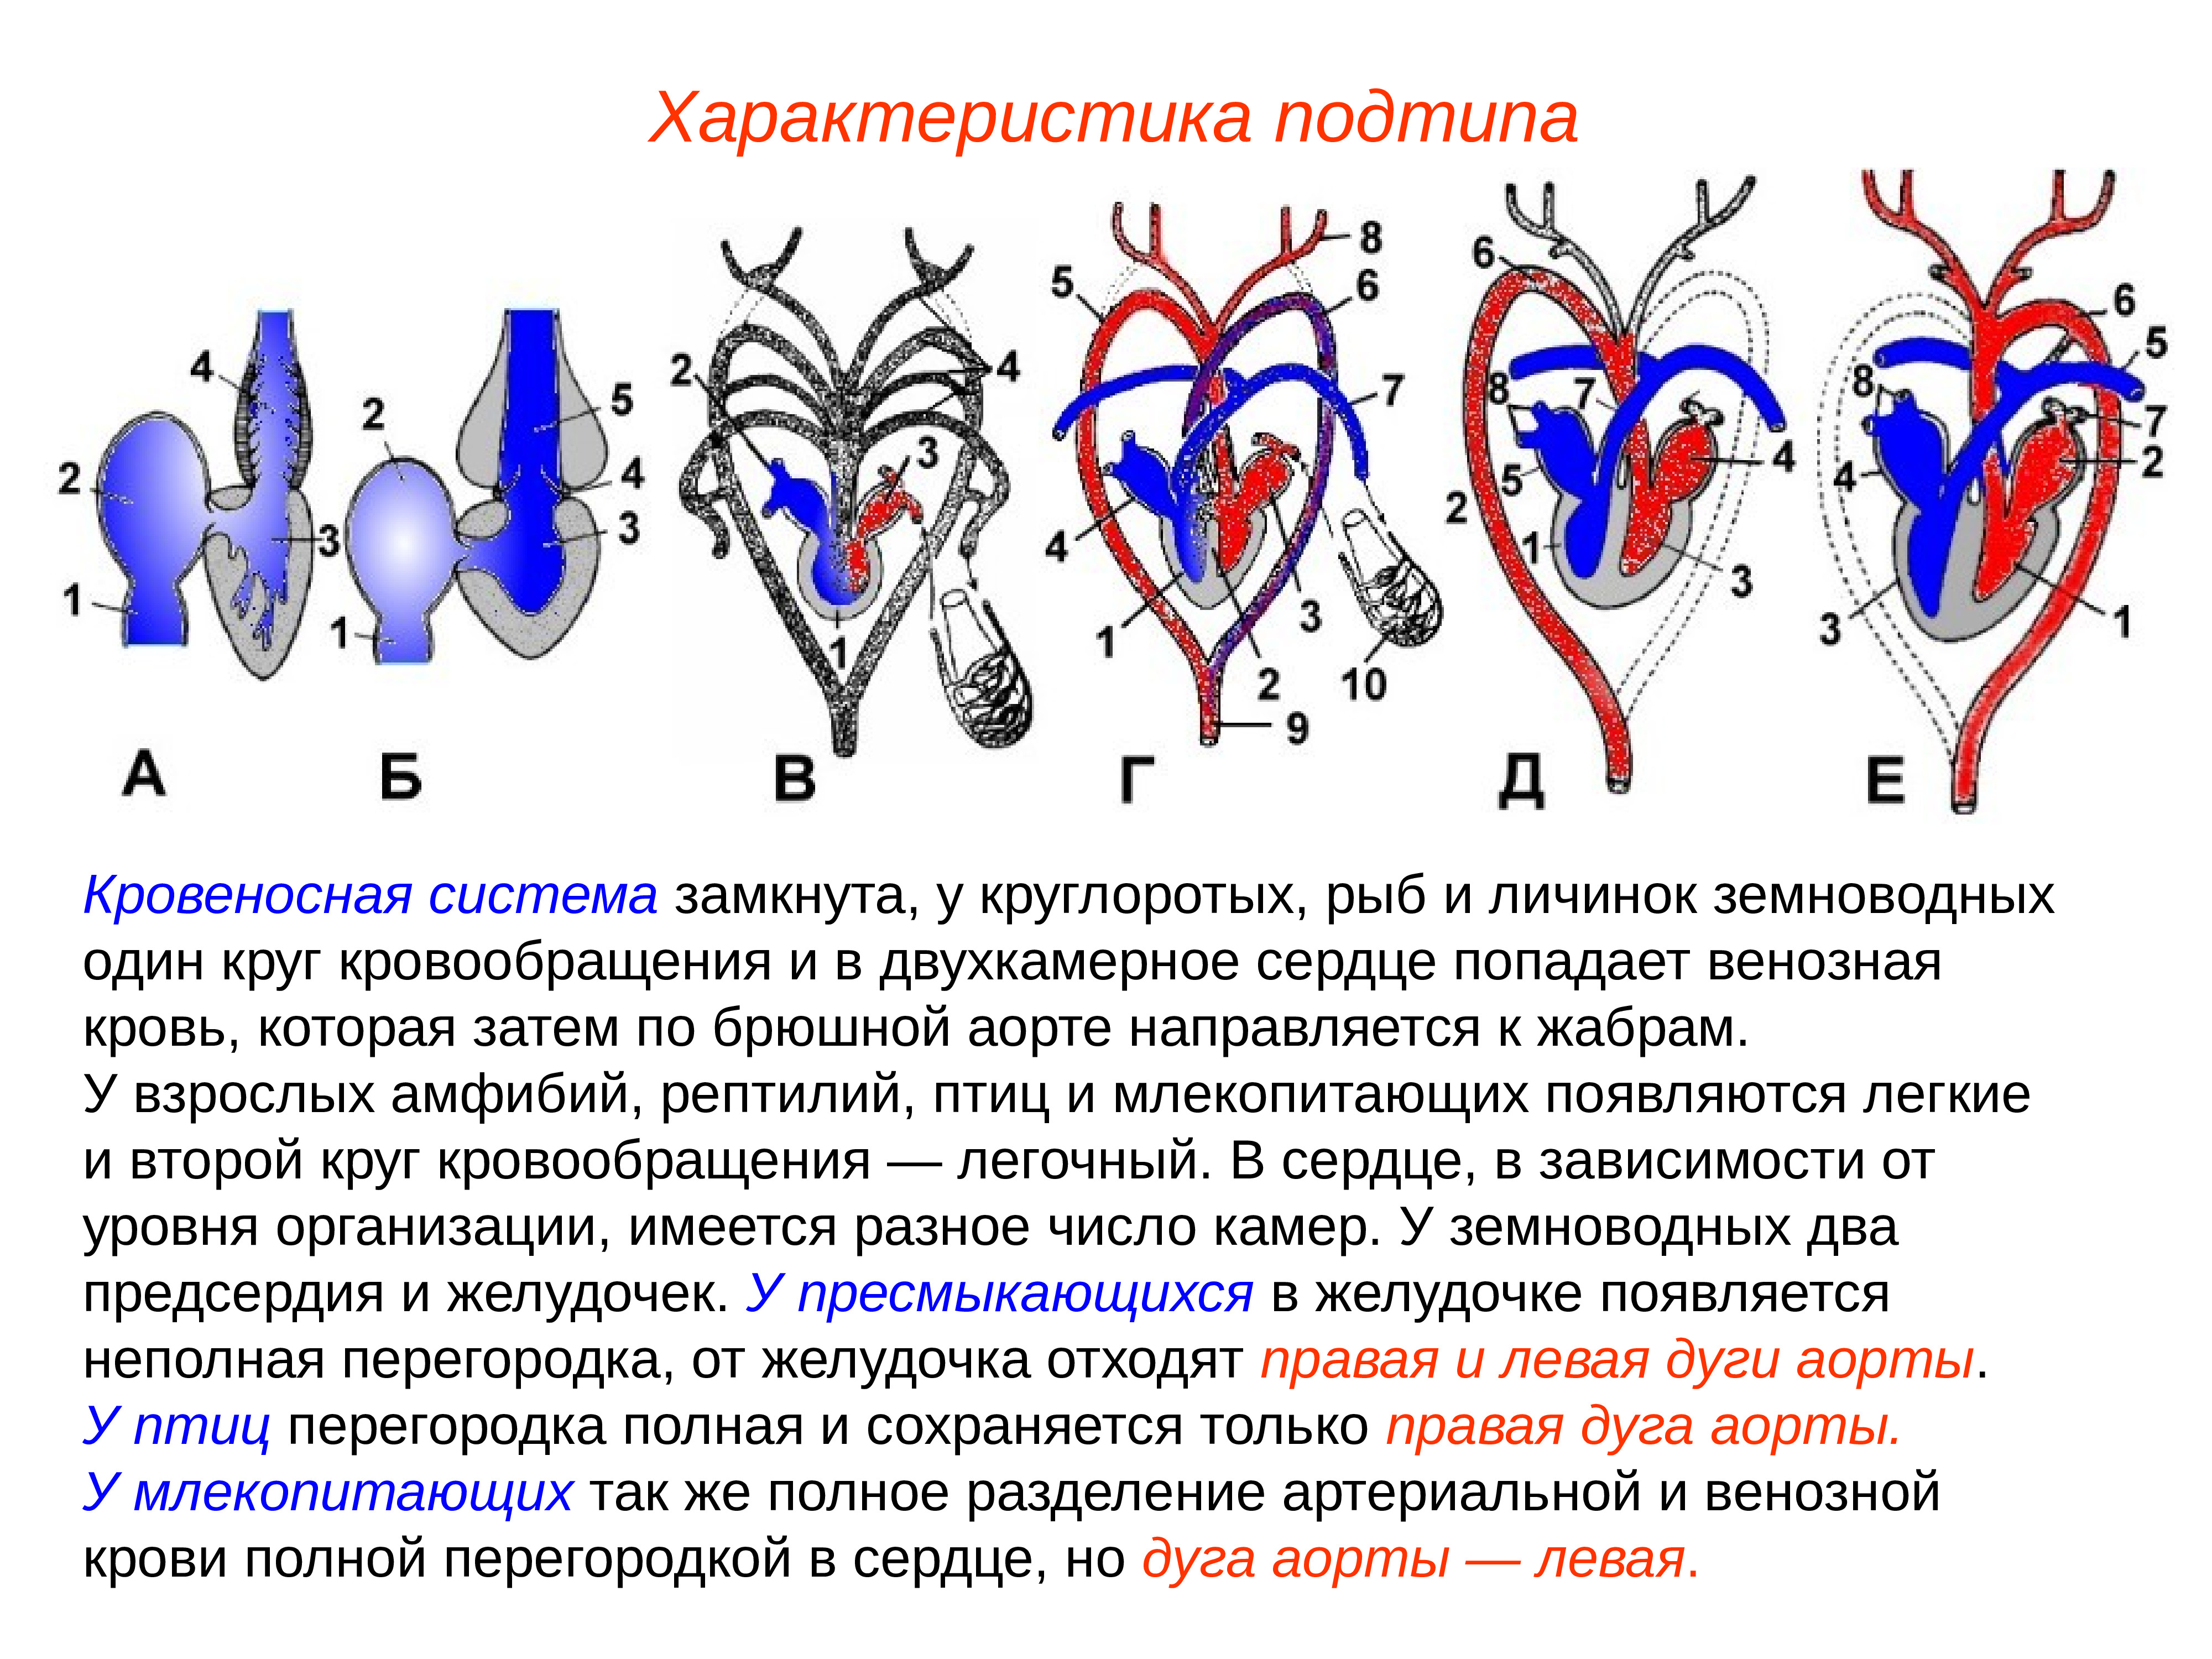 Сравнение сердца птиц и млекопитающих. Сравнительная анатомия кровеносной системы. Дуги аорты у амфибий. Сравнительная анатомия кровеносной системы позвоночных. Кровеносная система рыб земноводных пресмыкающихся.